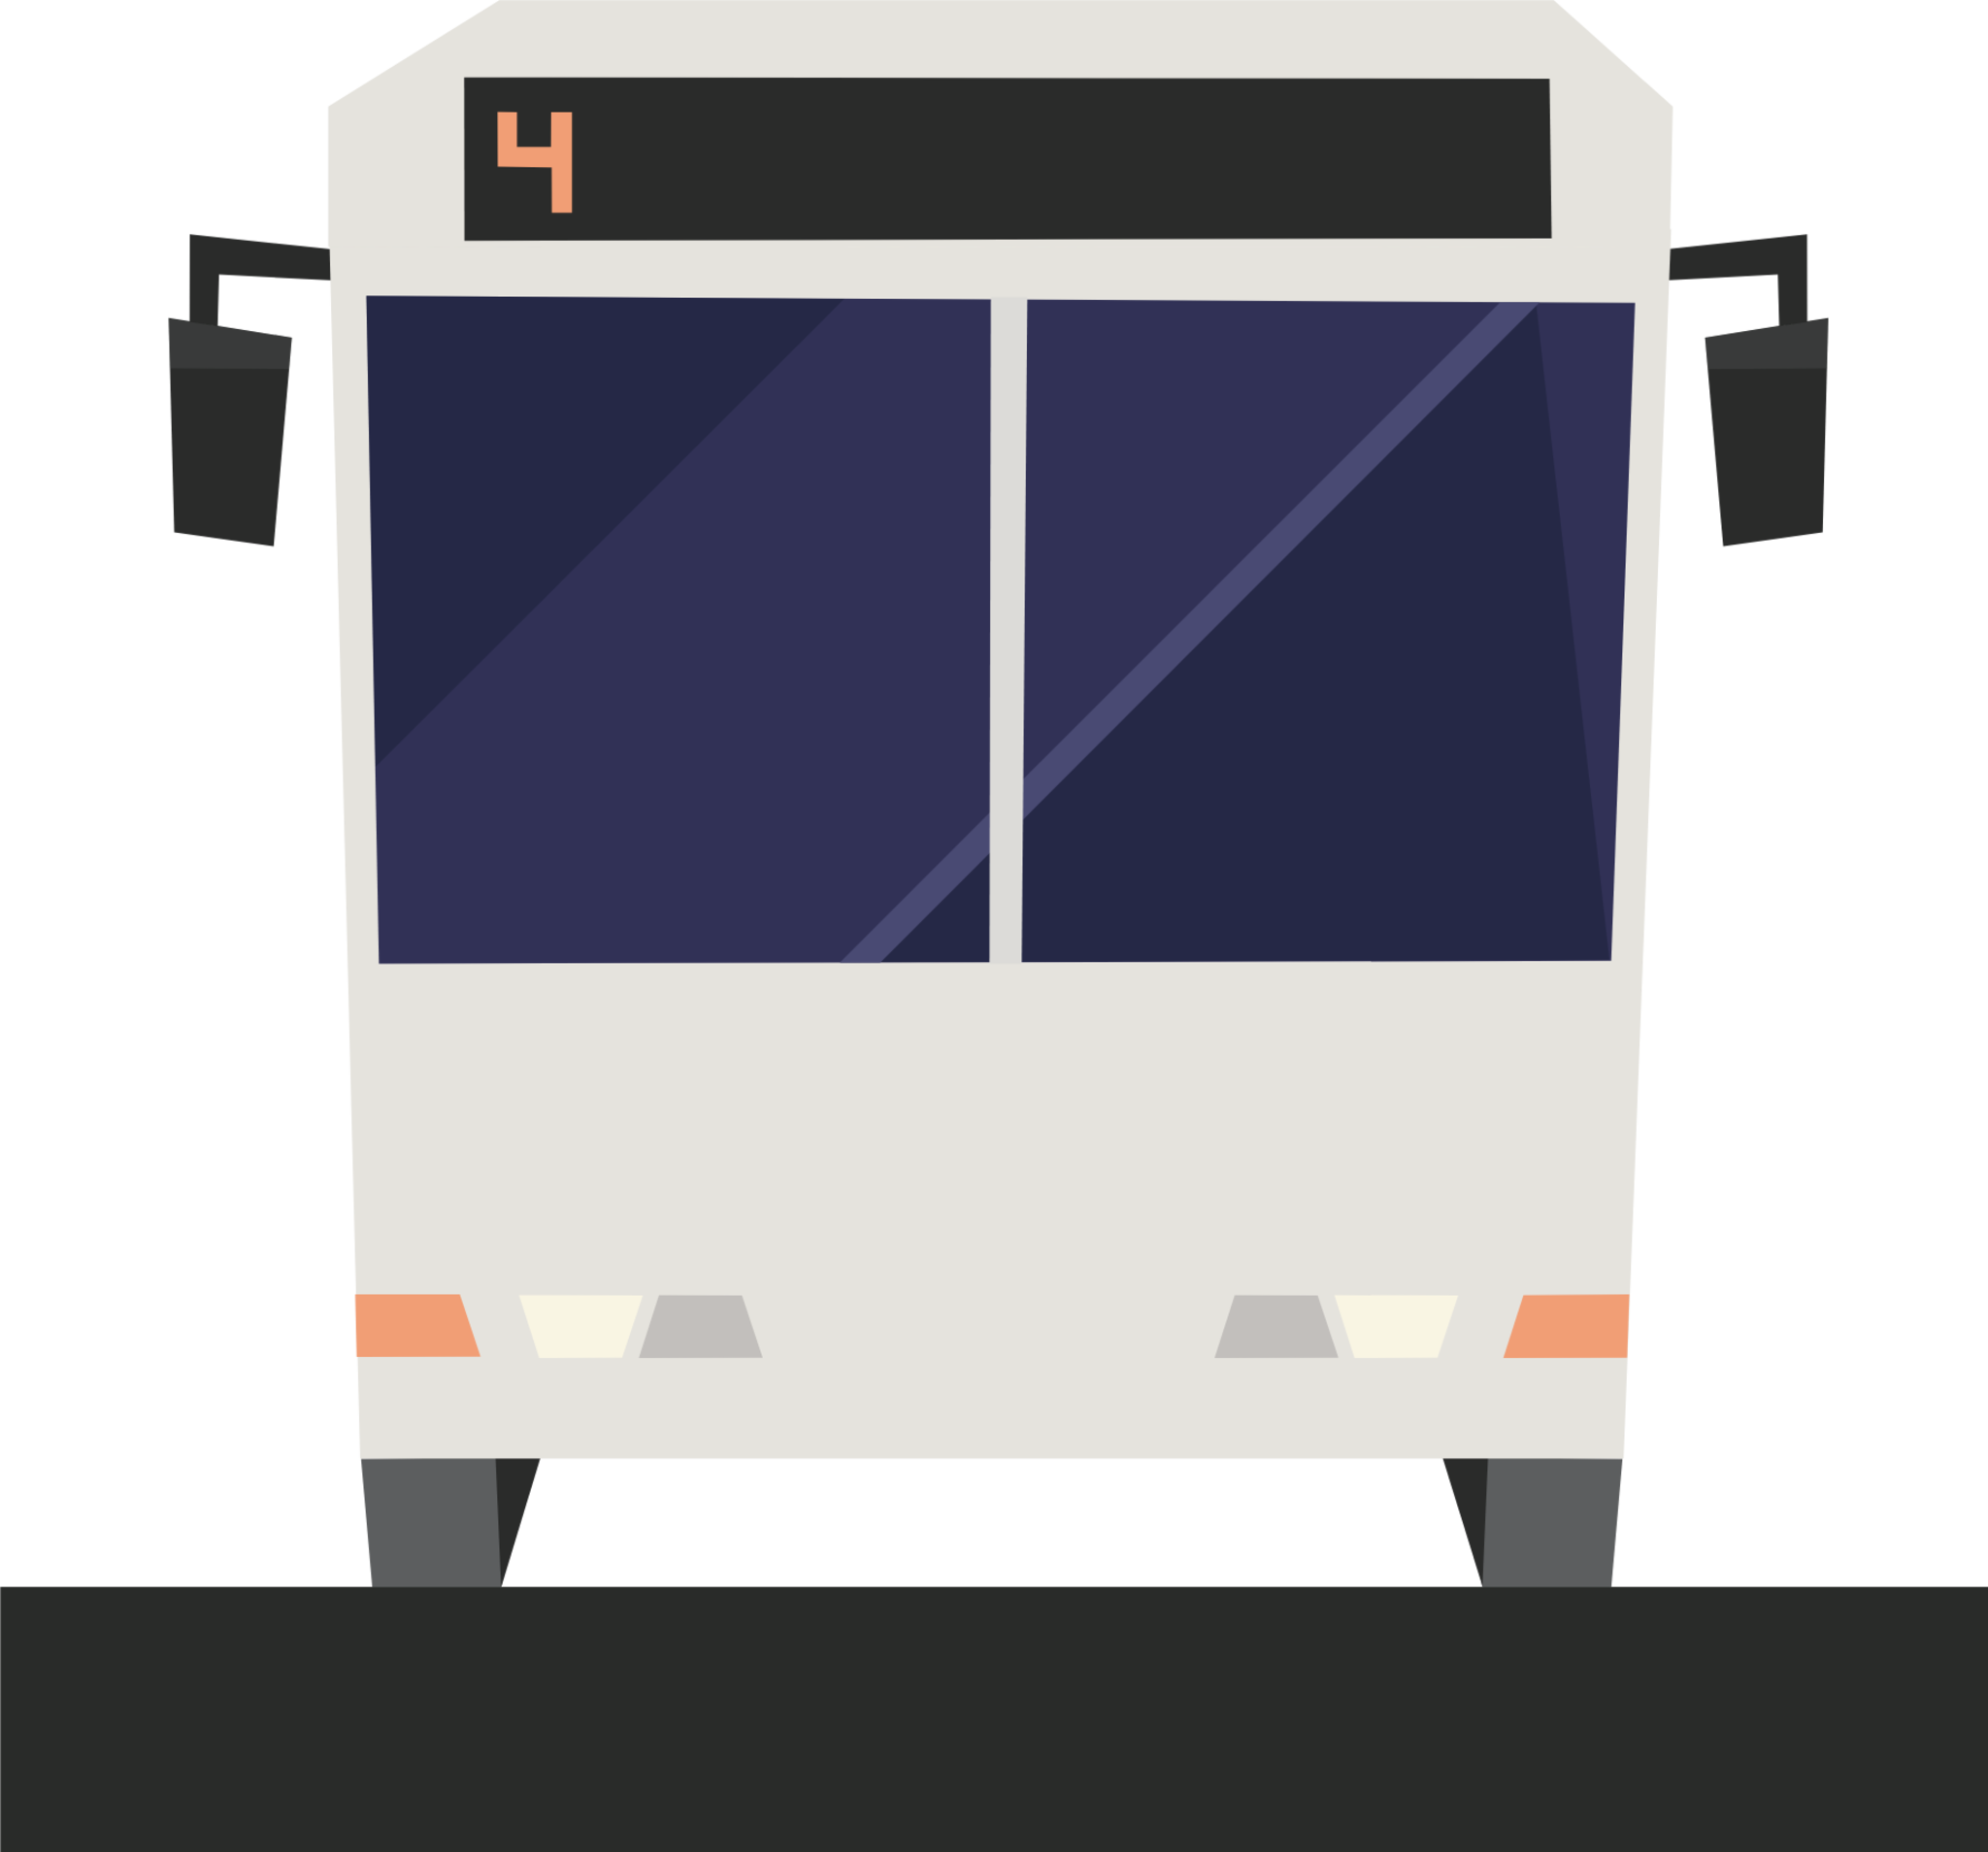 bus lane illustration